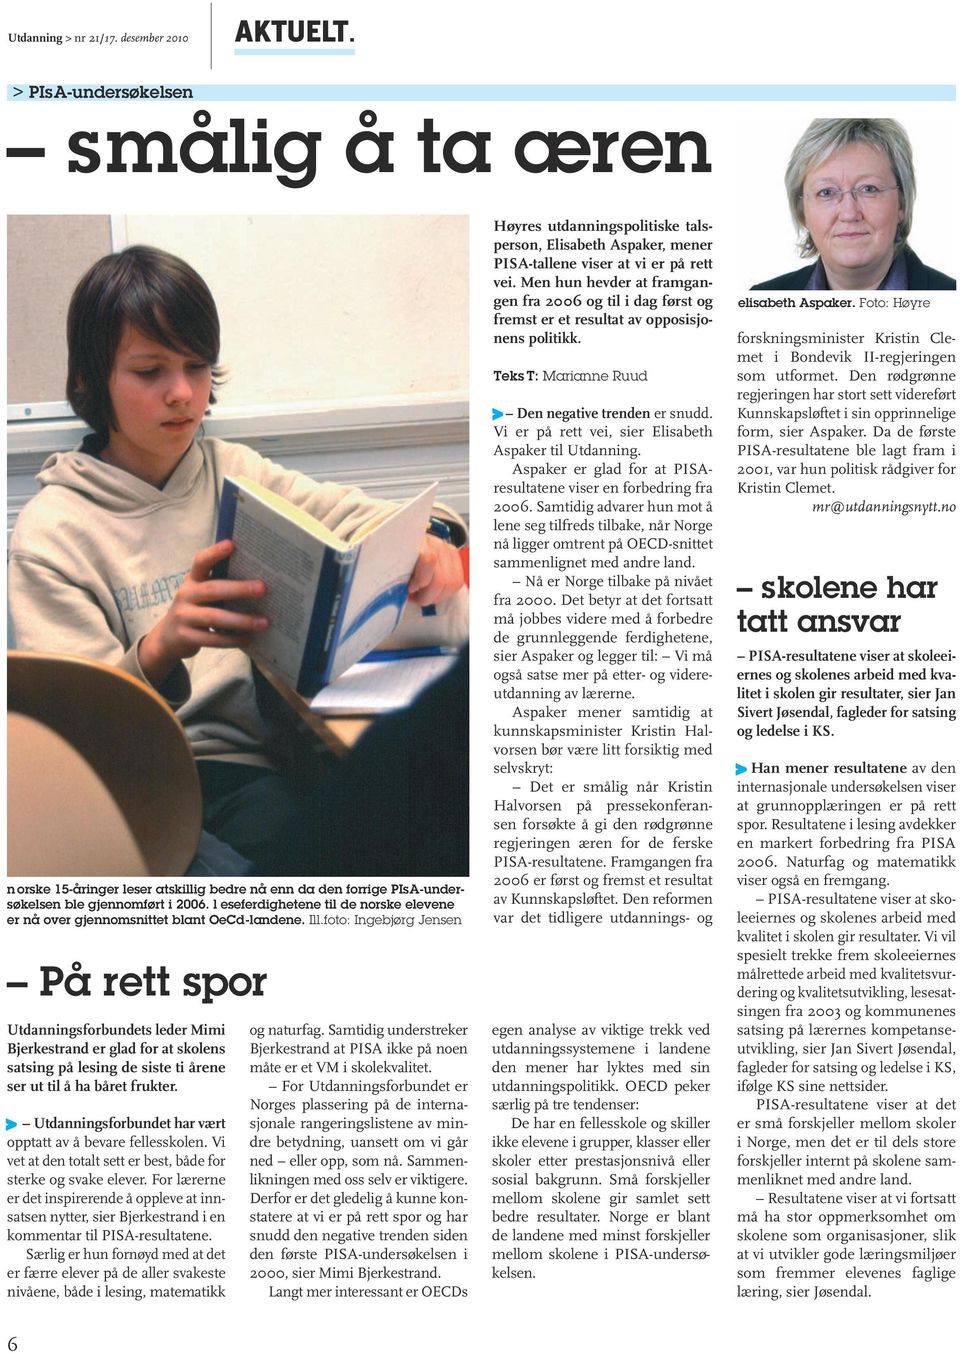 foto: Ingebjørg Jensen På rett spor Utdanningsforbundets leder Mimi Bjerkestrand er glad for at skolens satsing på lesing de siste ti årene ser ut til å ha båret frukter.